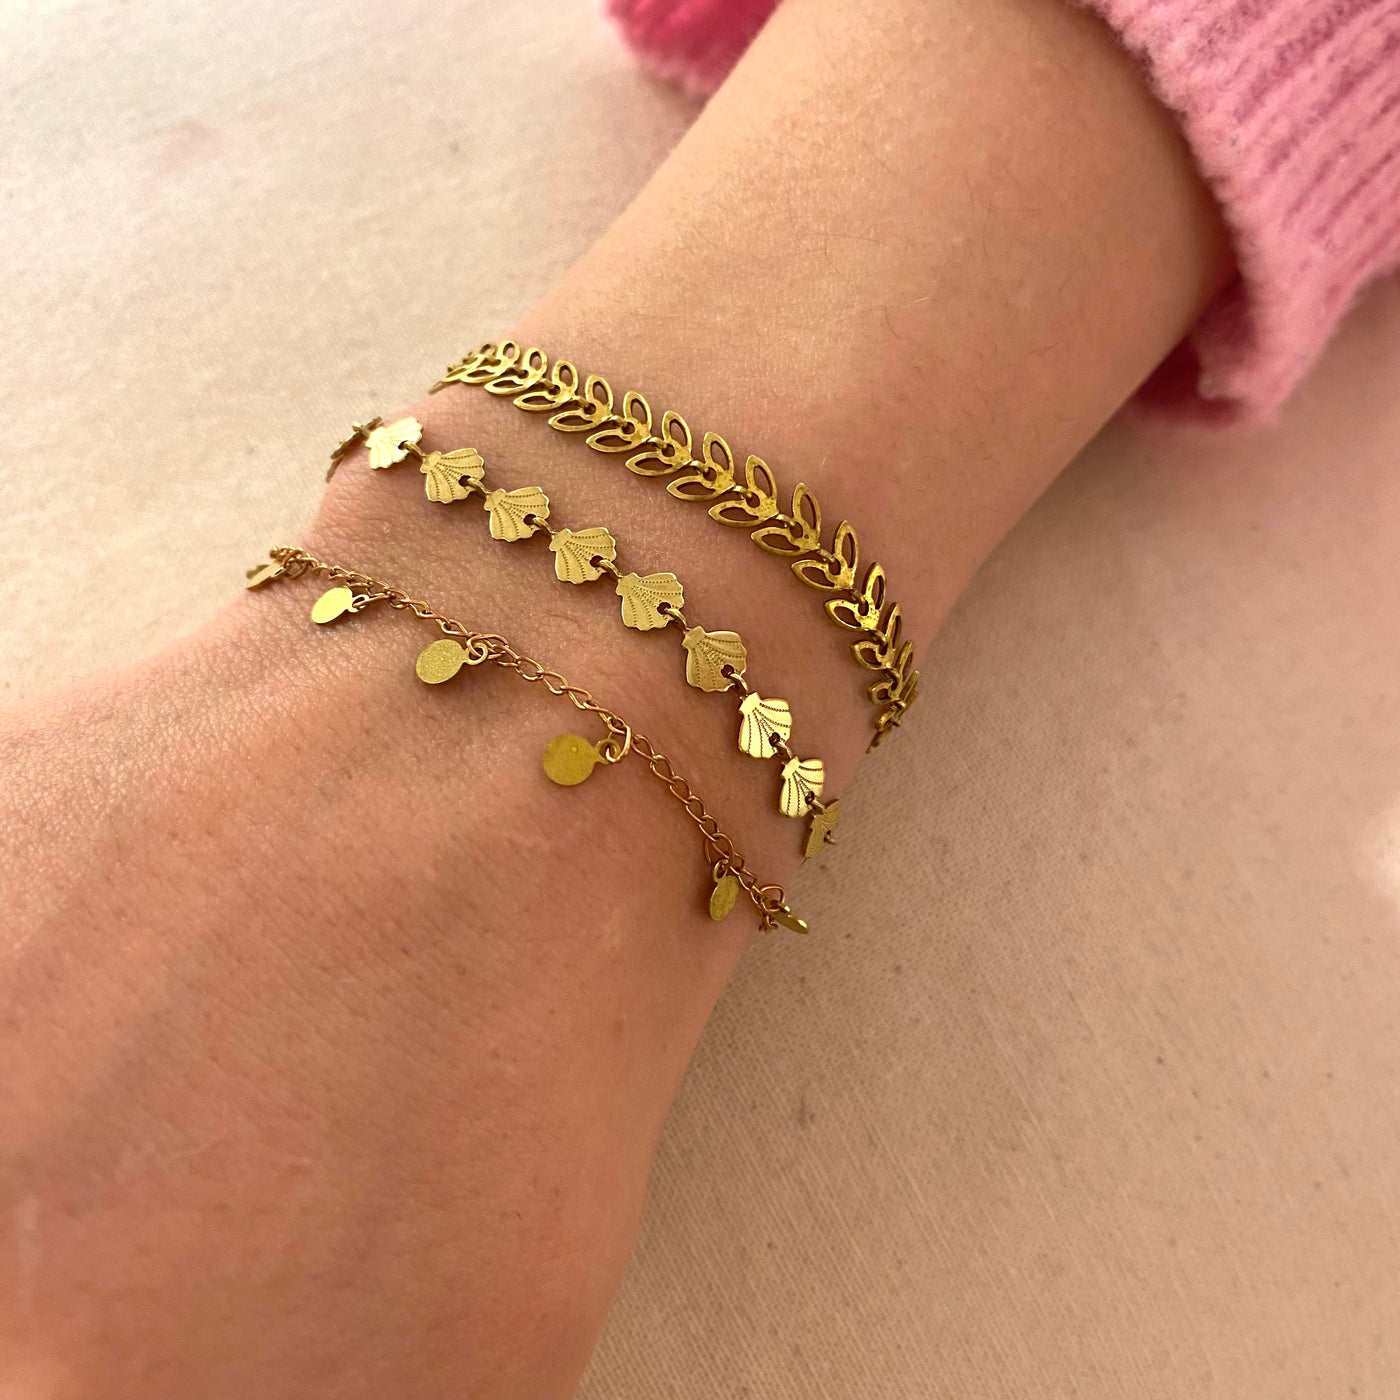 LIV - Brass bracelet